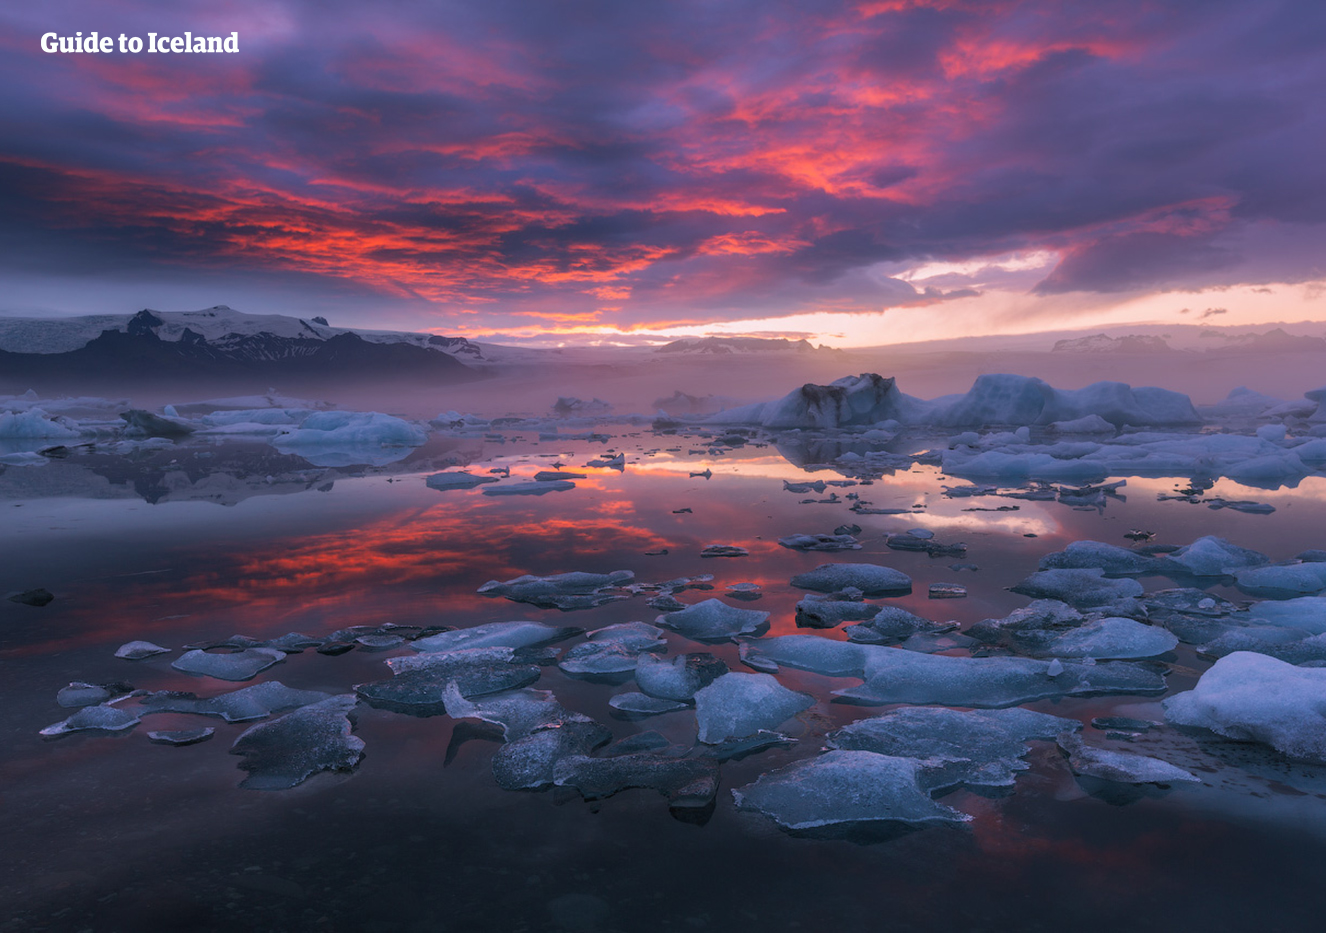 De Jökulsárlón-gletsjerlagune is een van de mooiste natuurfenomenen van IJsland.